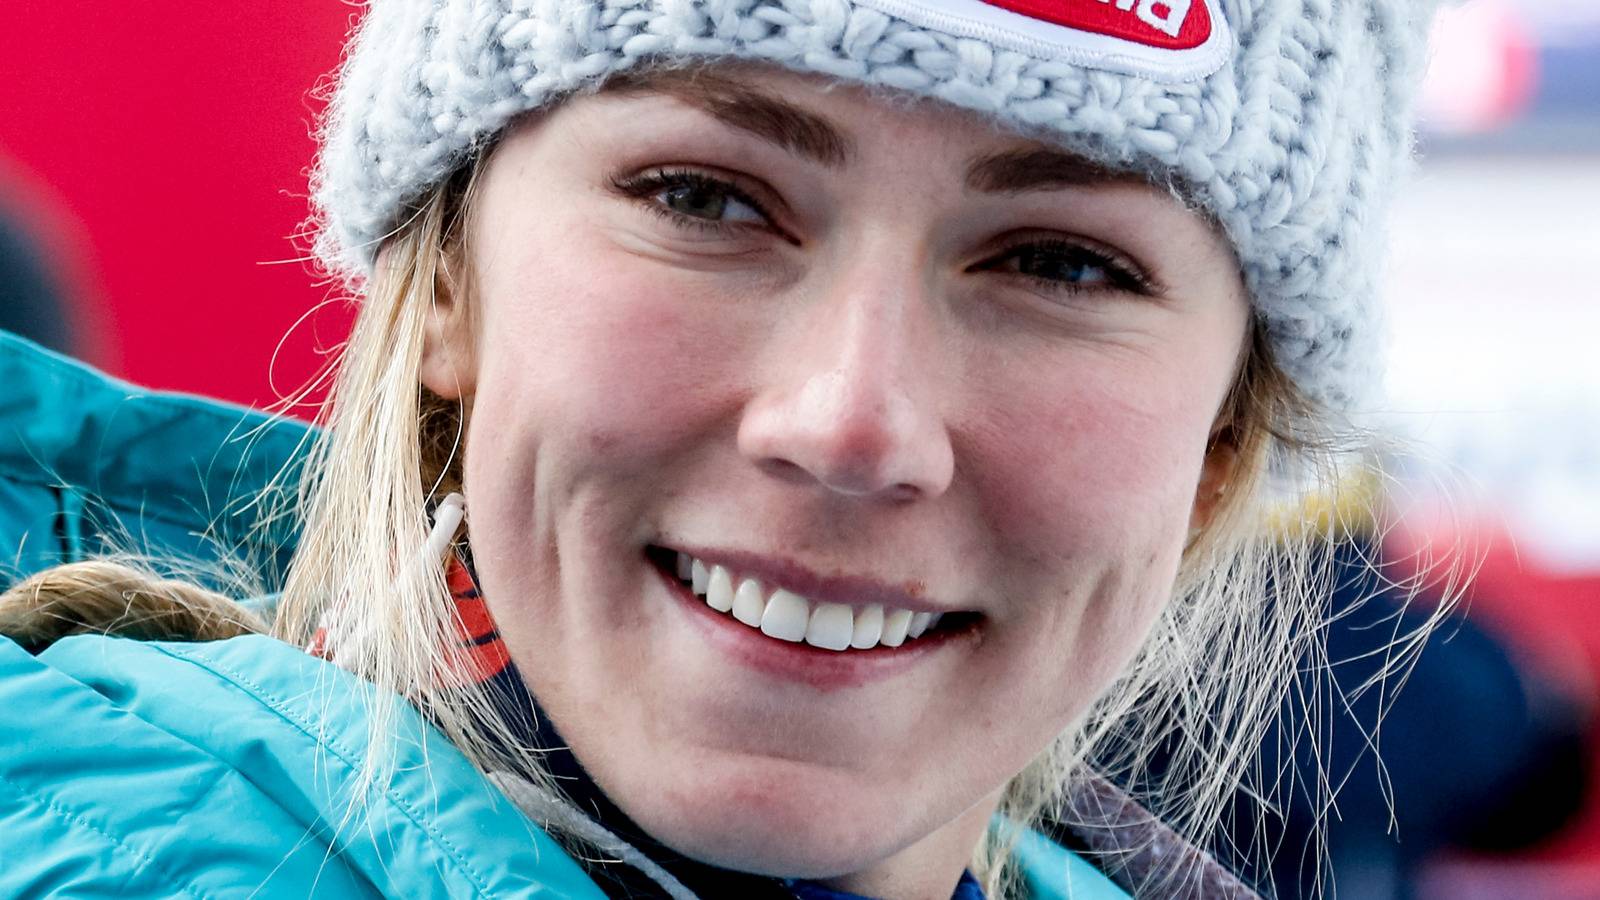 Микаэла шиффрин завоевывает очередной титул чемпионки мира | горнолыжный информационный портал fanski.ru – фанаты горных лыж.